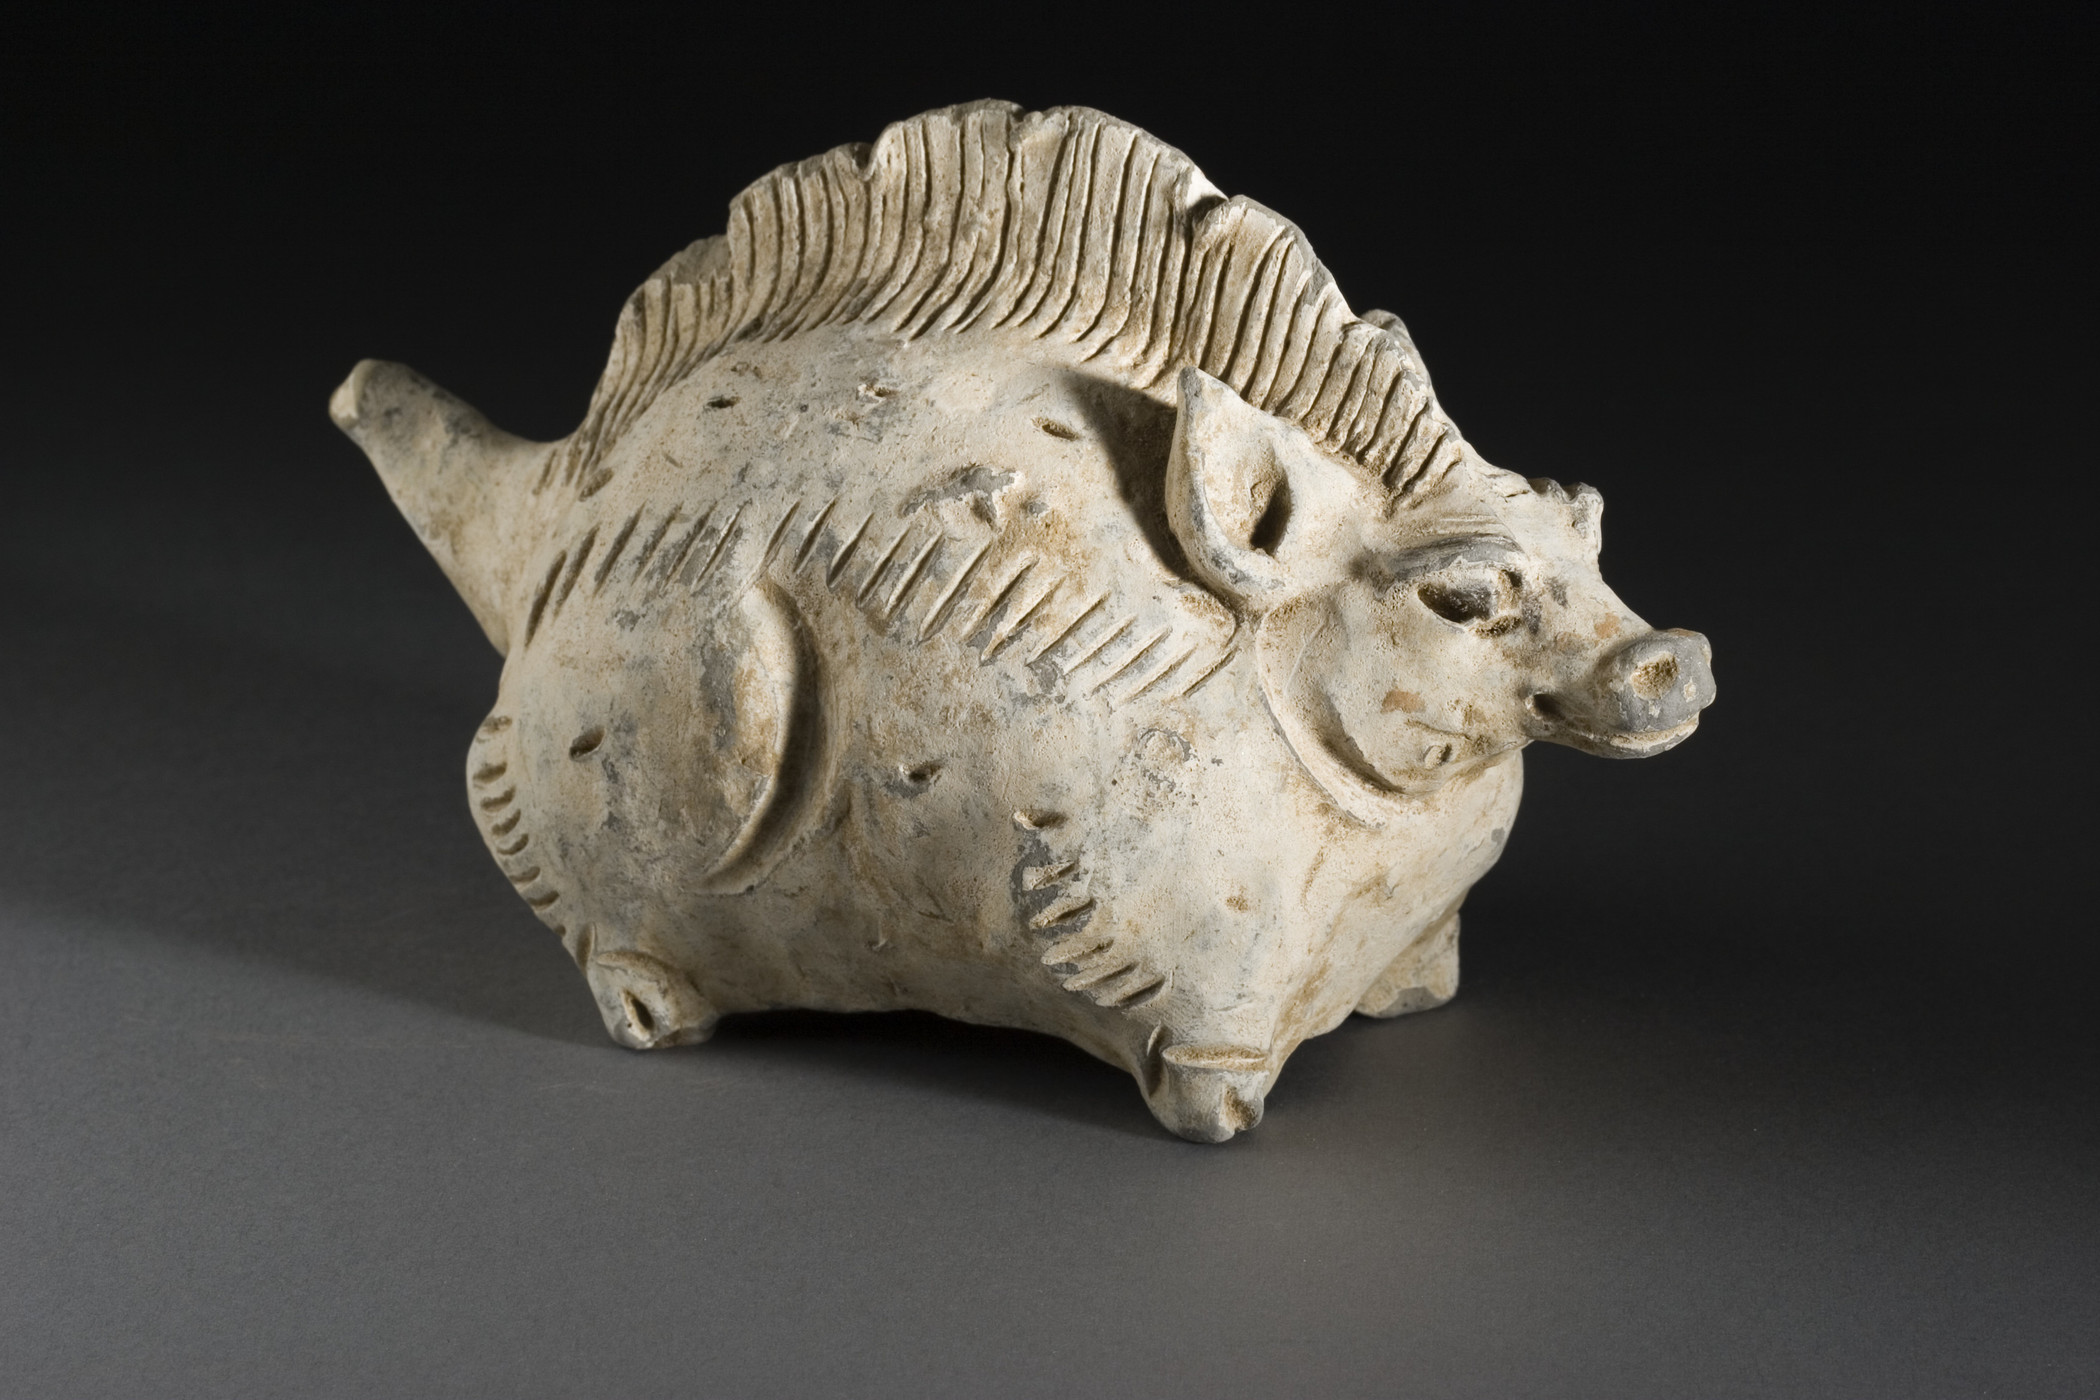 Schwein - Chinesisches Tierkreiszeichen, Skulptur aus der Yuan Dynastie, China, 1279-1368